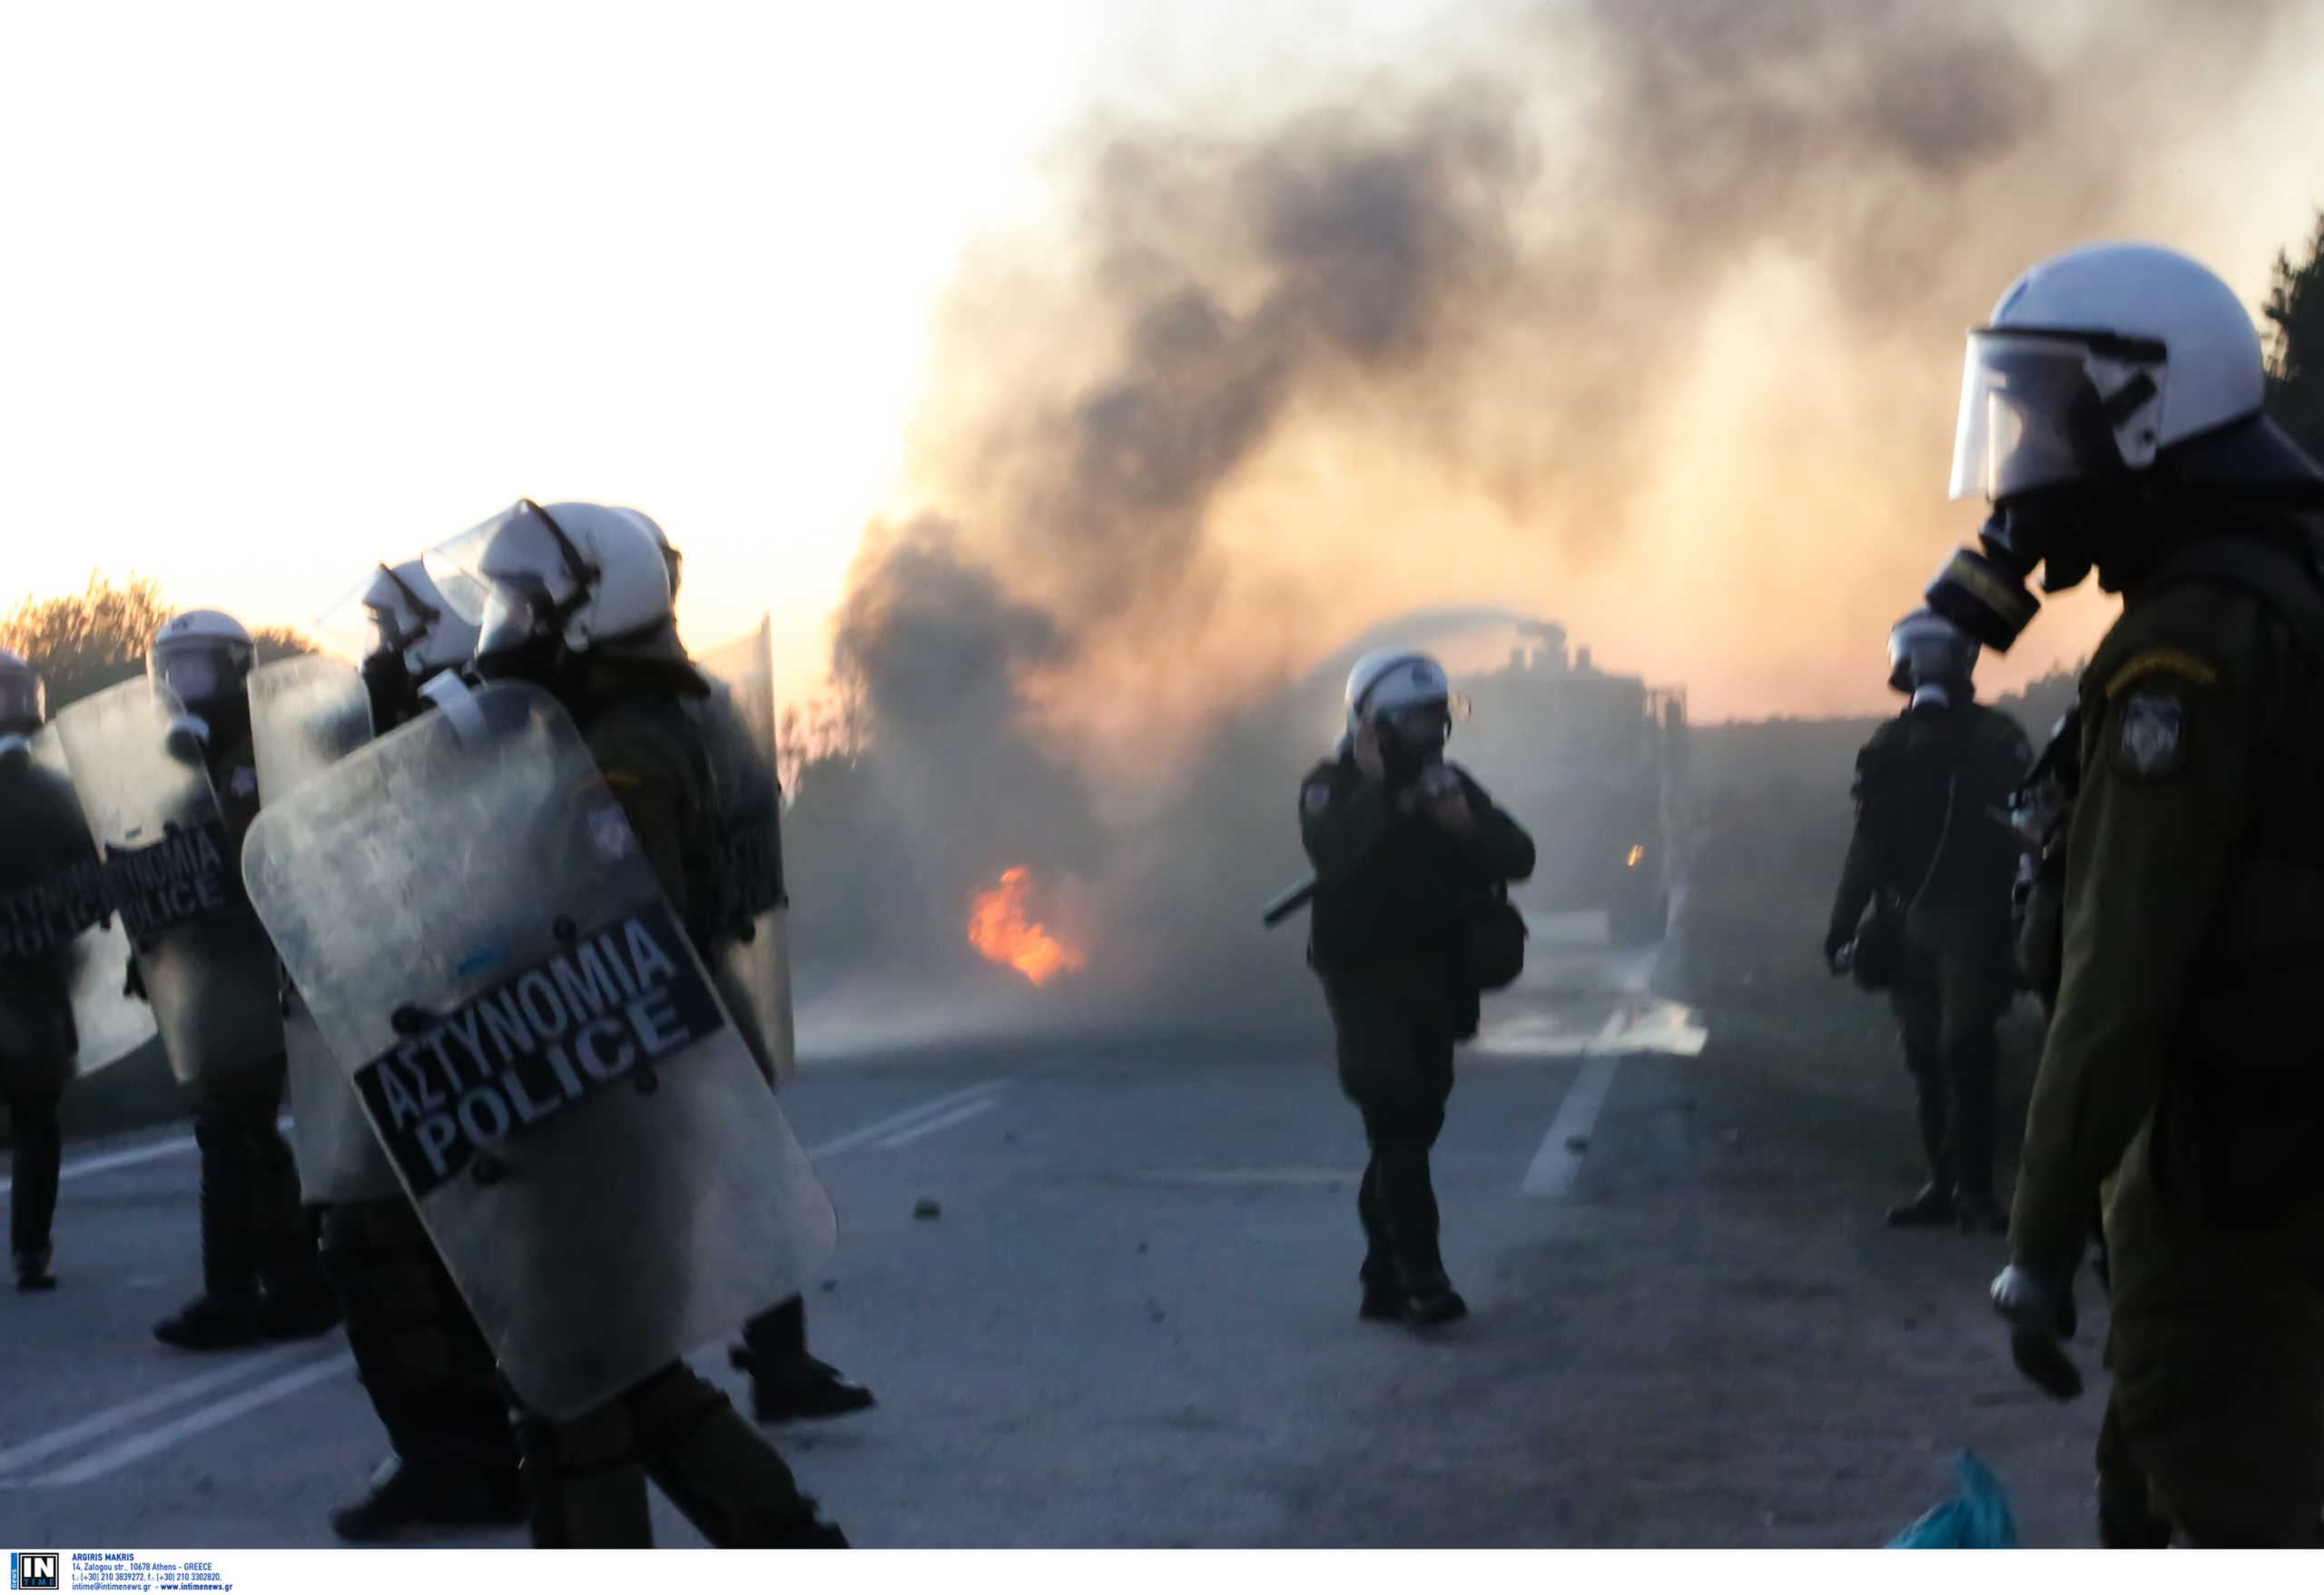 Λέσβος: Νέα επεισόδια με φωτιές και μάχες σώμα με σώμα! Οι εικόνες που τράβηξε βουλευτής του ΣΥΡΙΖΑ (Φωτό και Βίντεο)